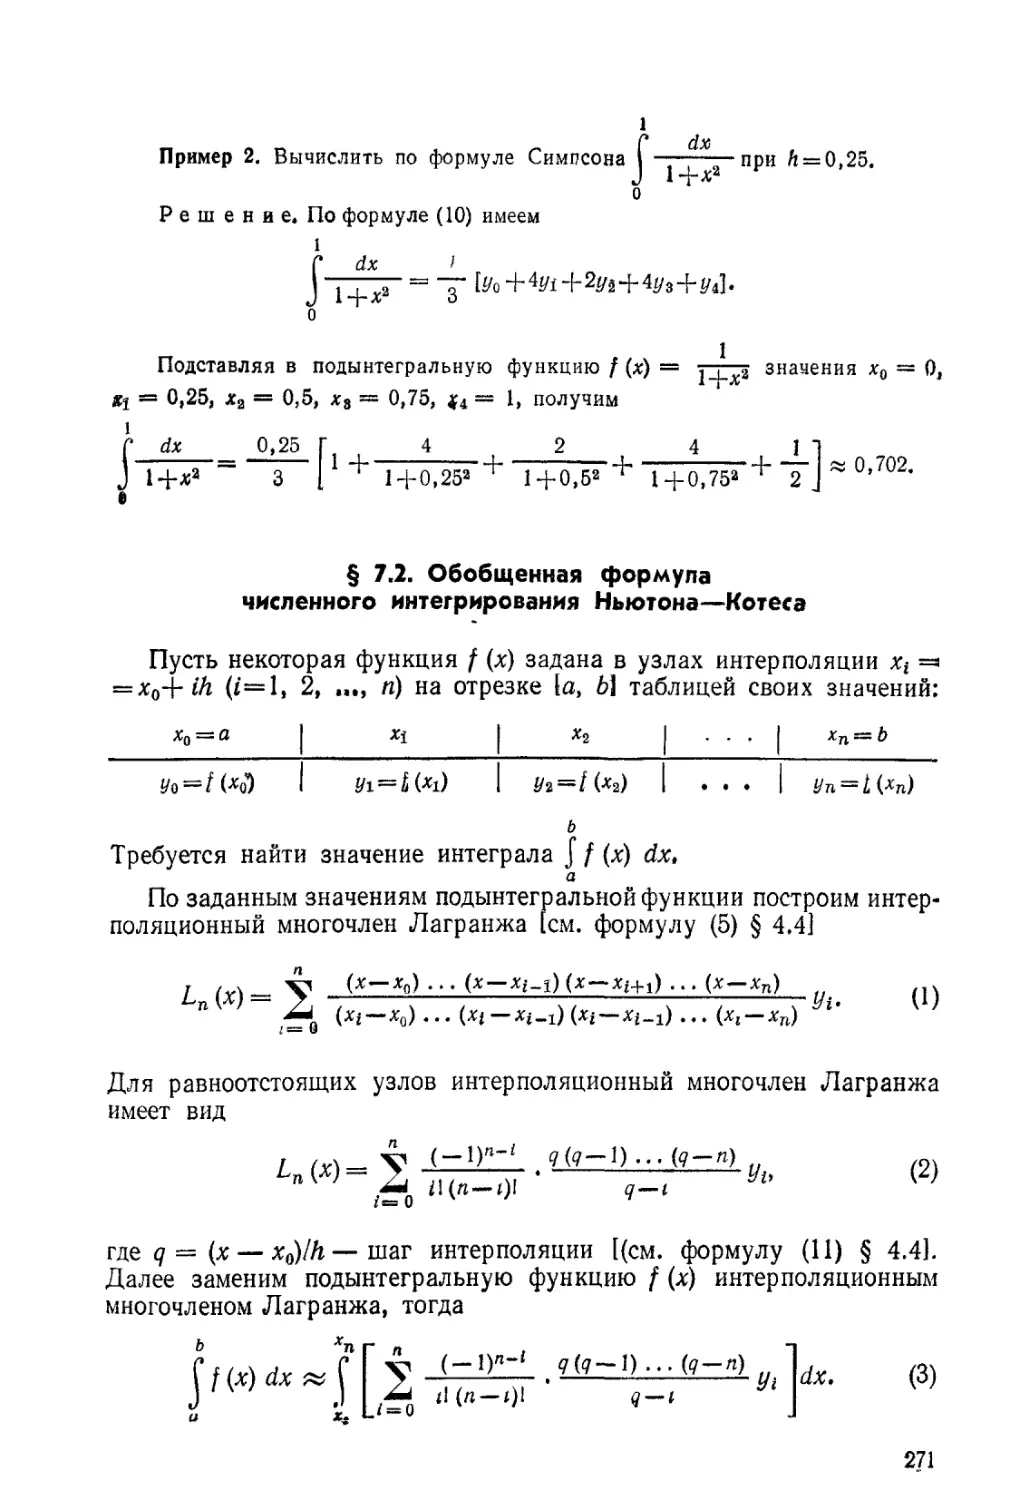 § 7.2. Обобщенная формула численного интегрирования Ньютона-Котеса